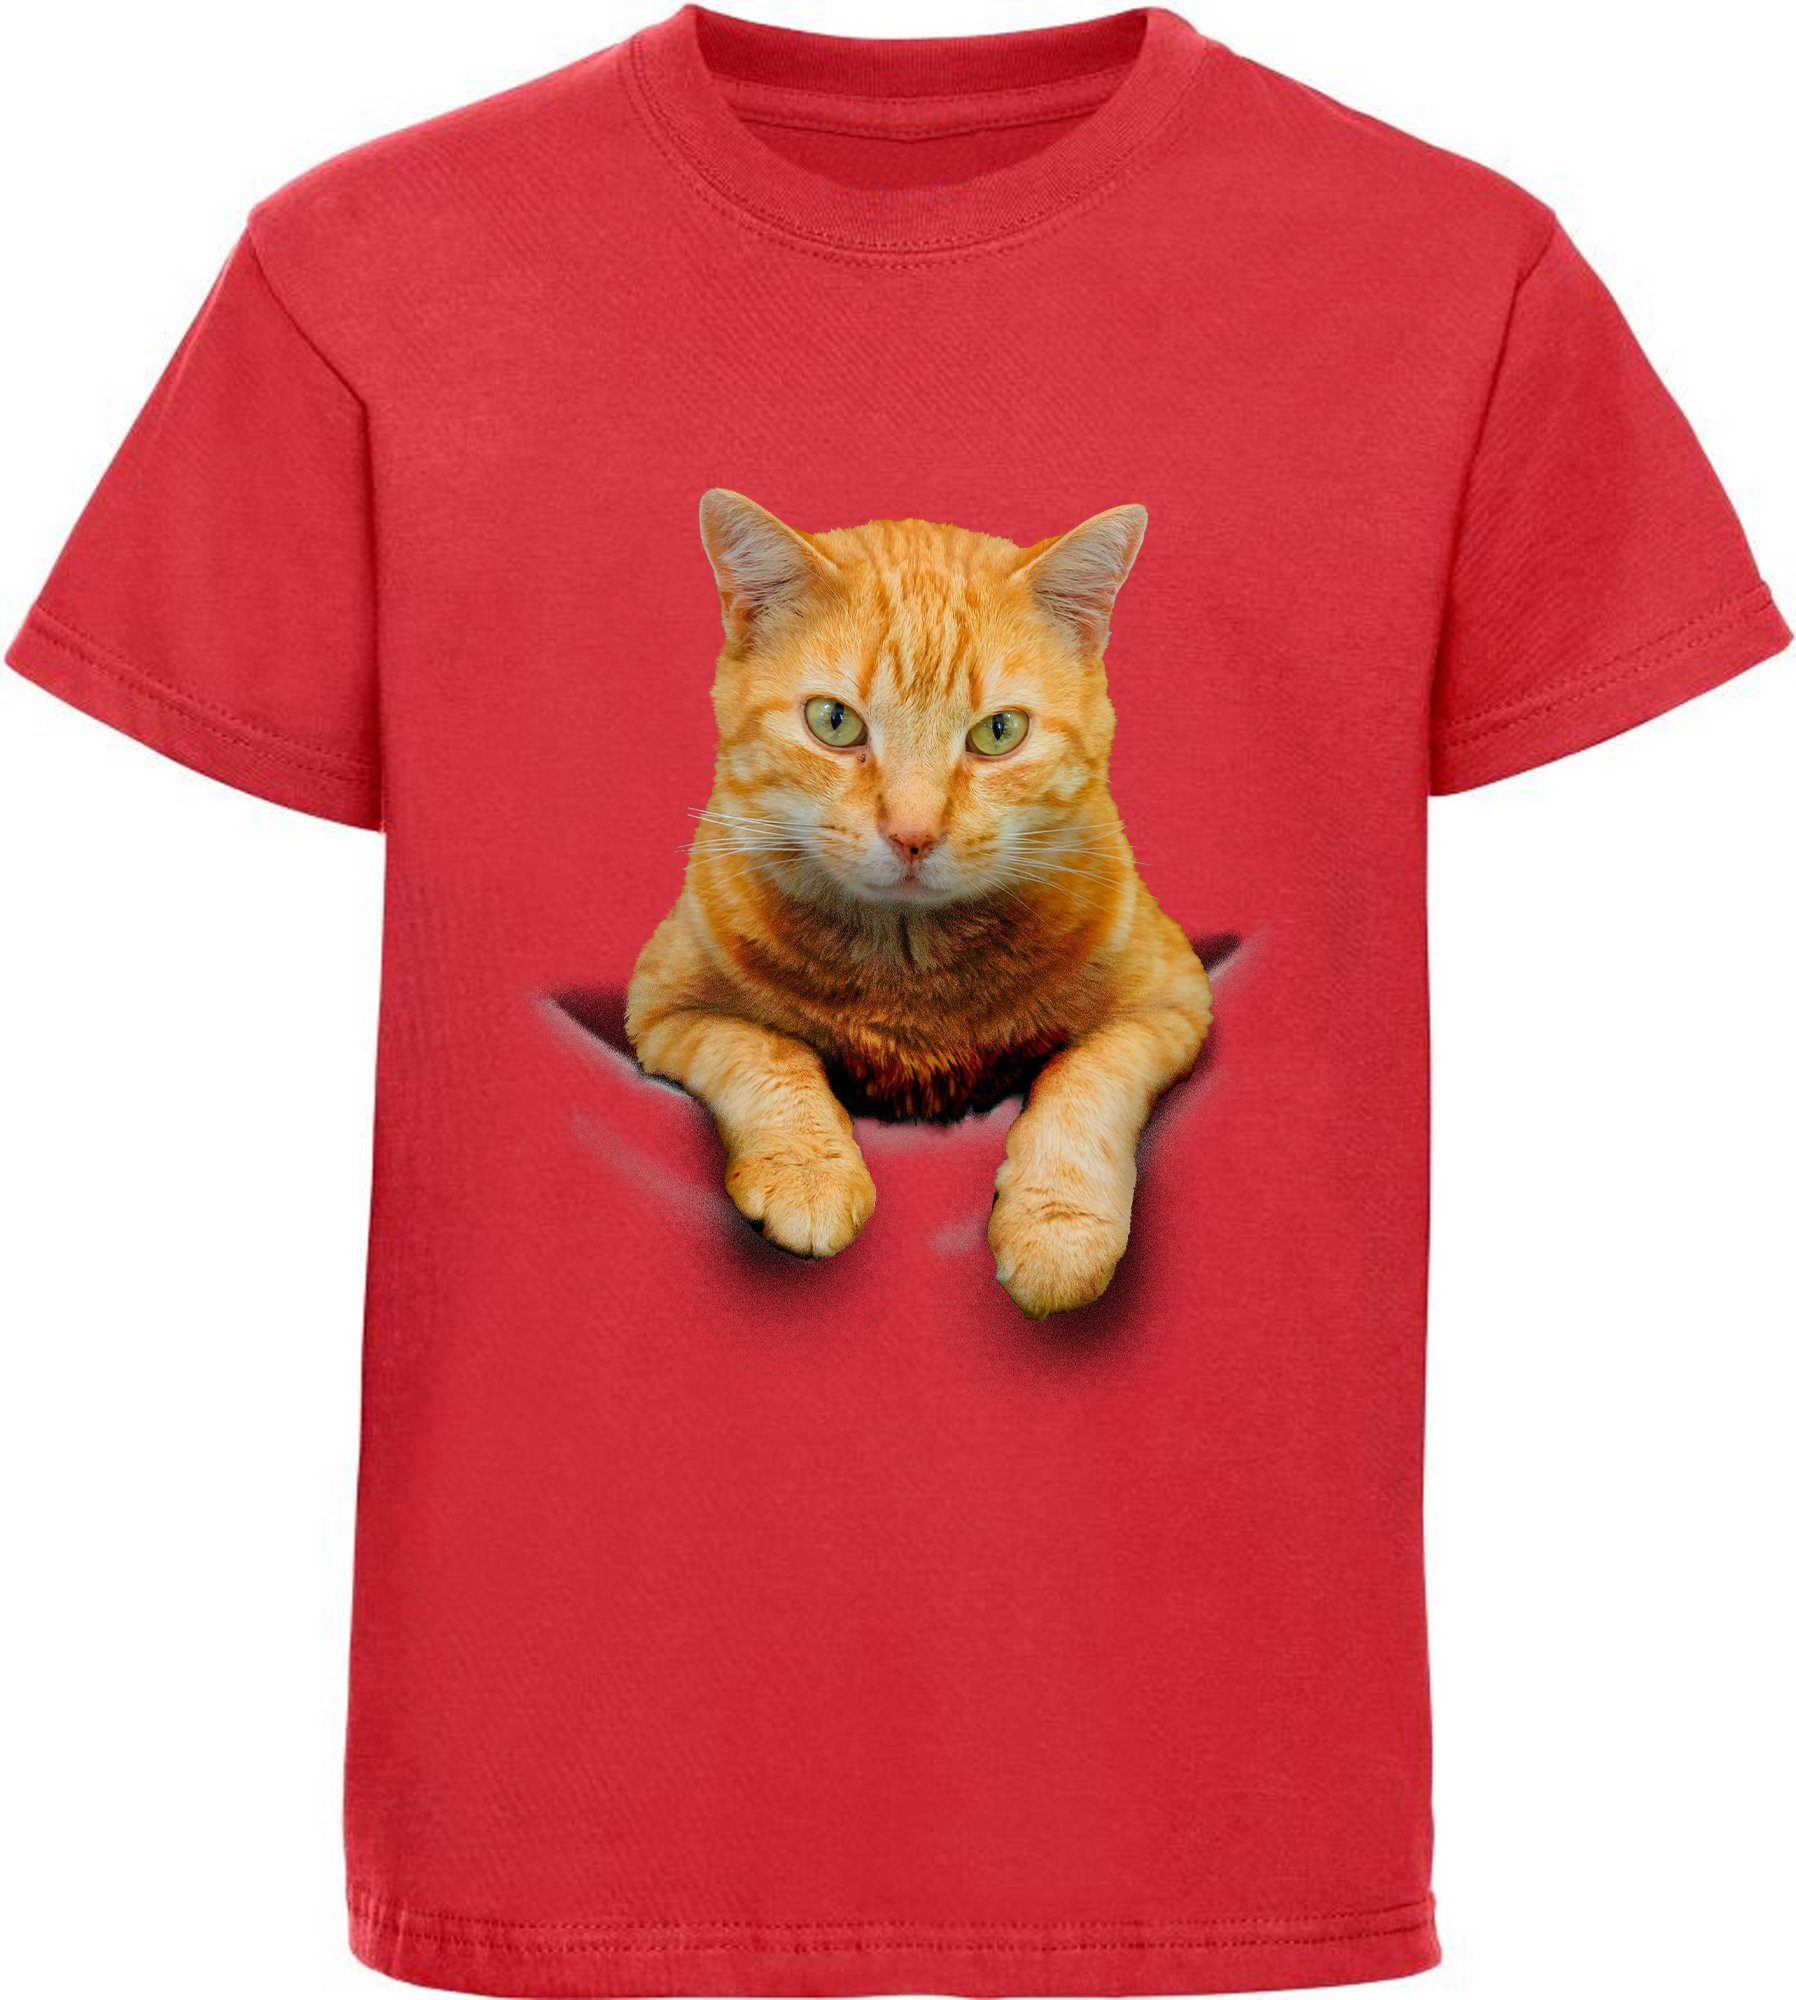 MyDesign24 Print-Shirt bedrucktes Mädchen T-Shirt Katze in der Tasche Baumwollshirt mit Katze, weiß, schwarz, rot, rosa, i109